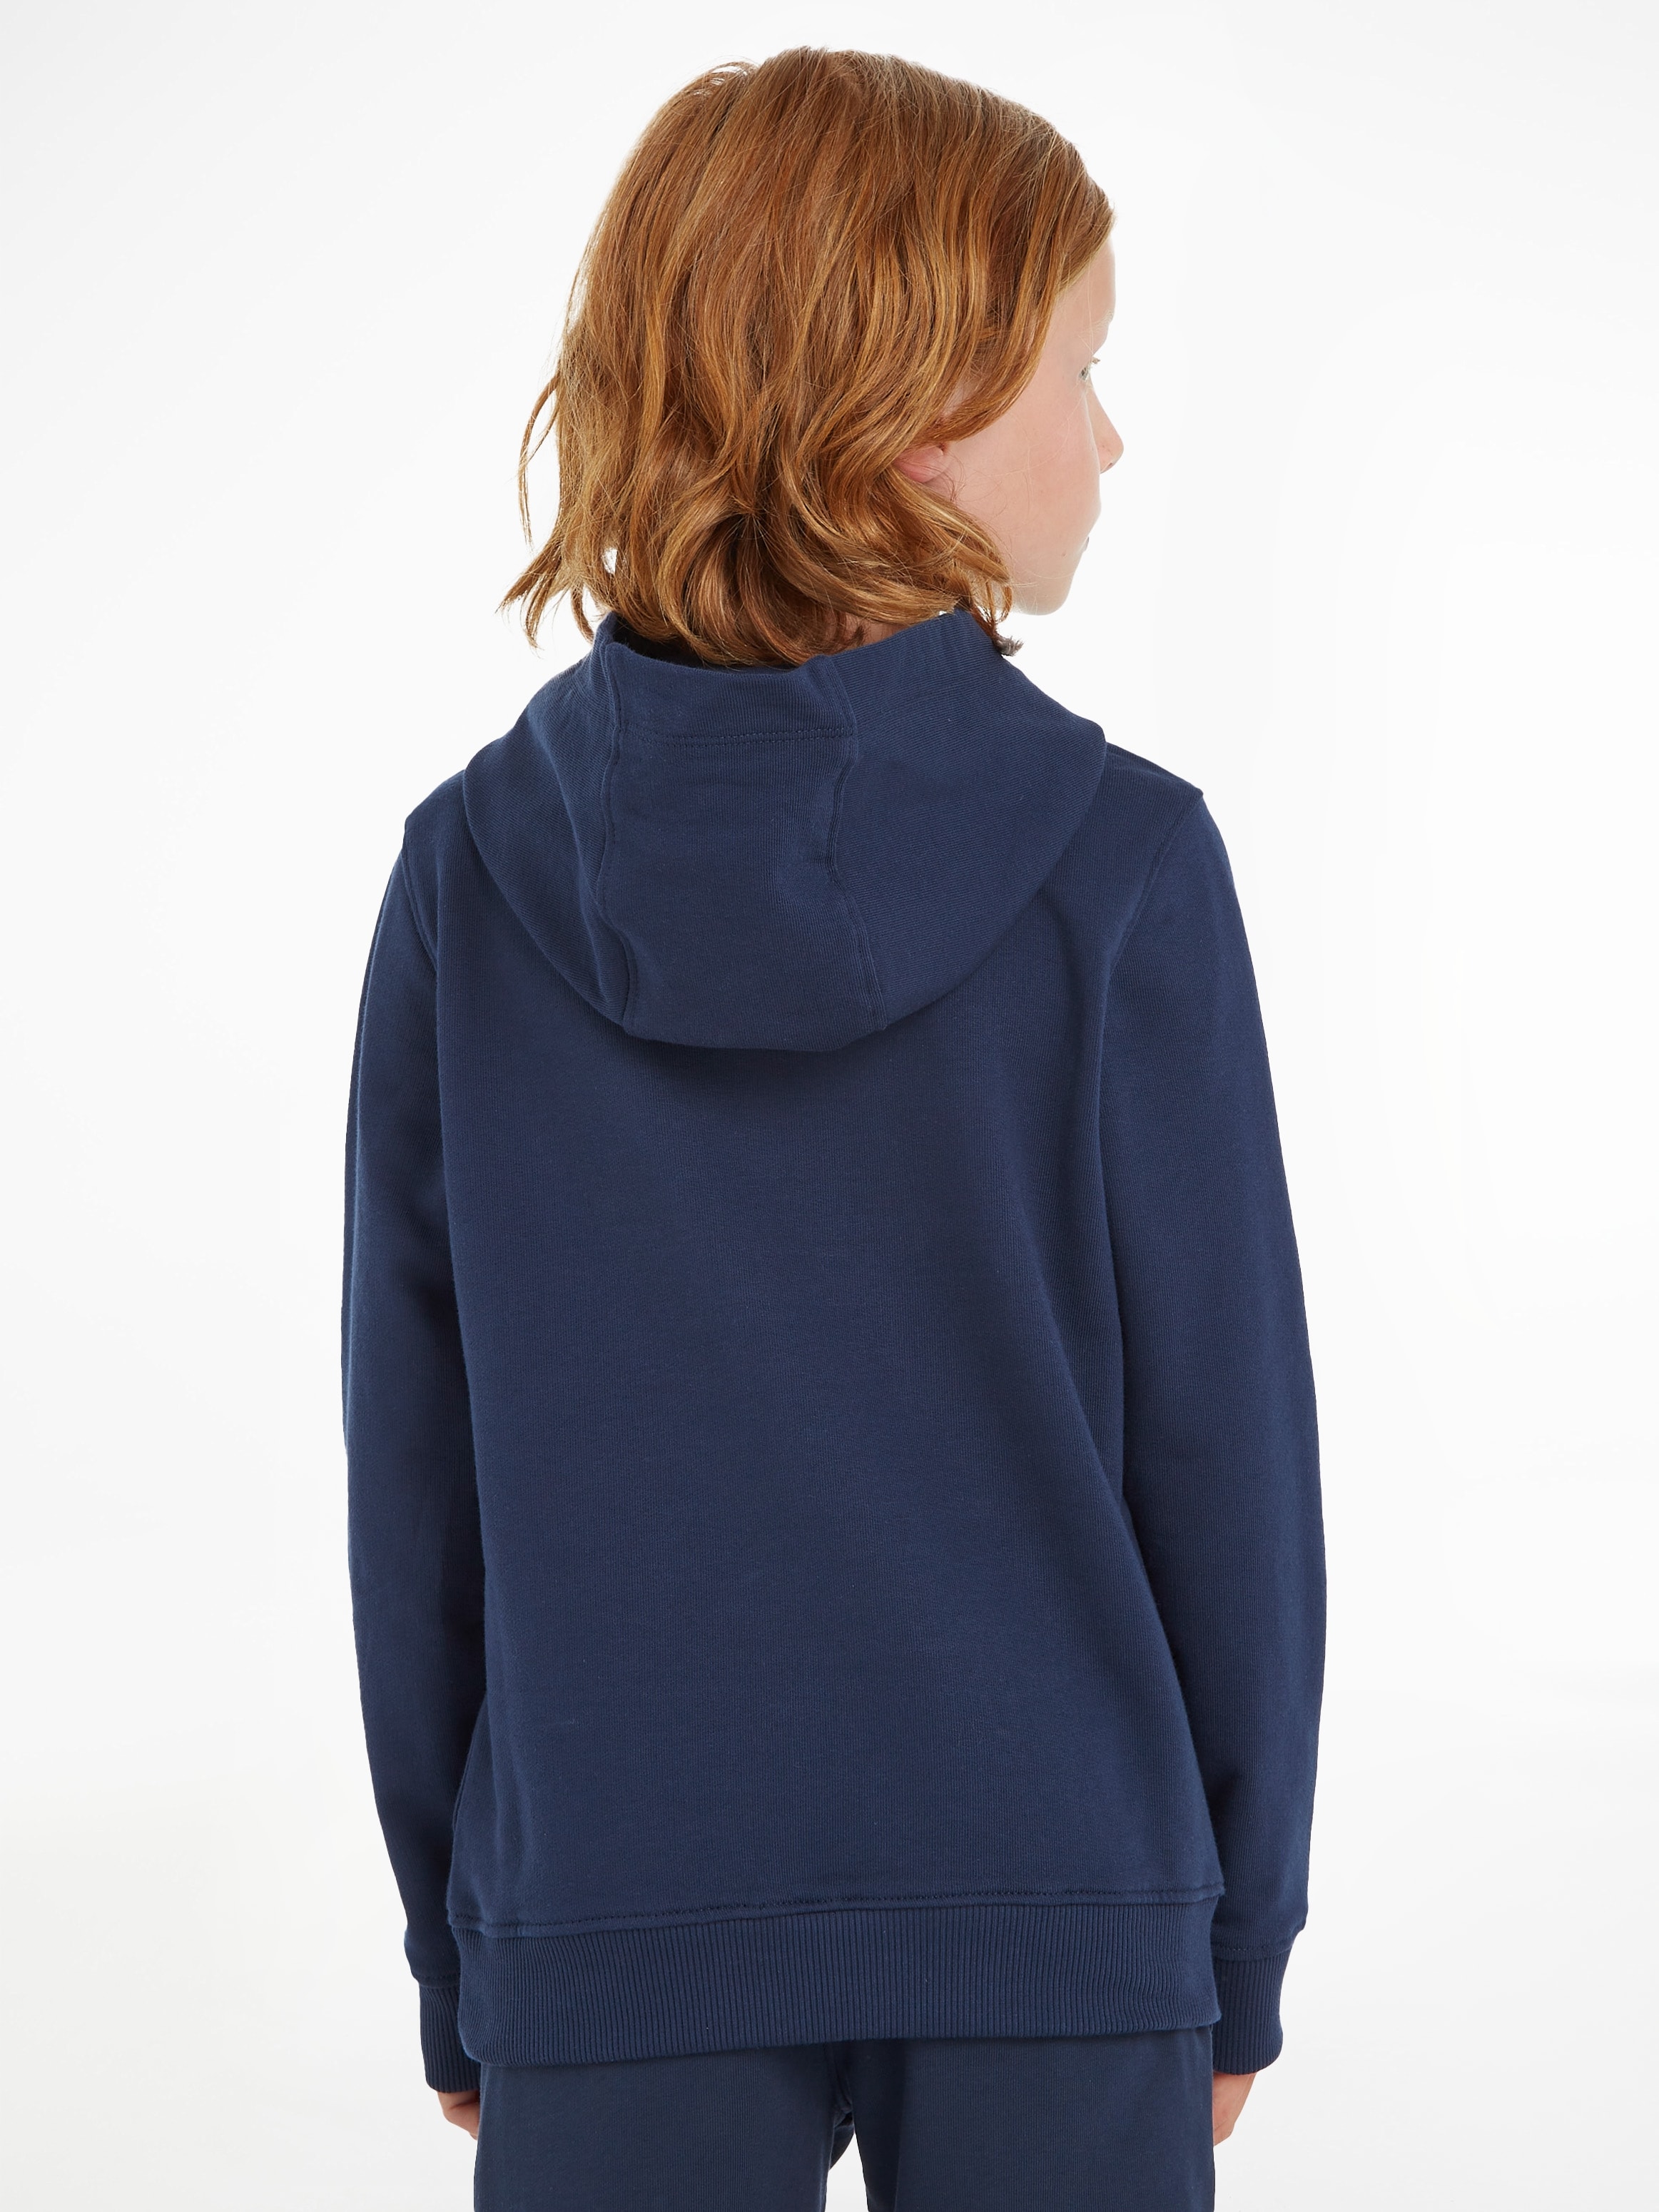 Kinder Kids Tommy Hilfiger Mädchen und »ESSENTIAL online Junior bestellen Jungen HOODIE«, MiniMe,für Kapuzensweatshirt